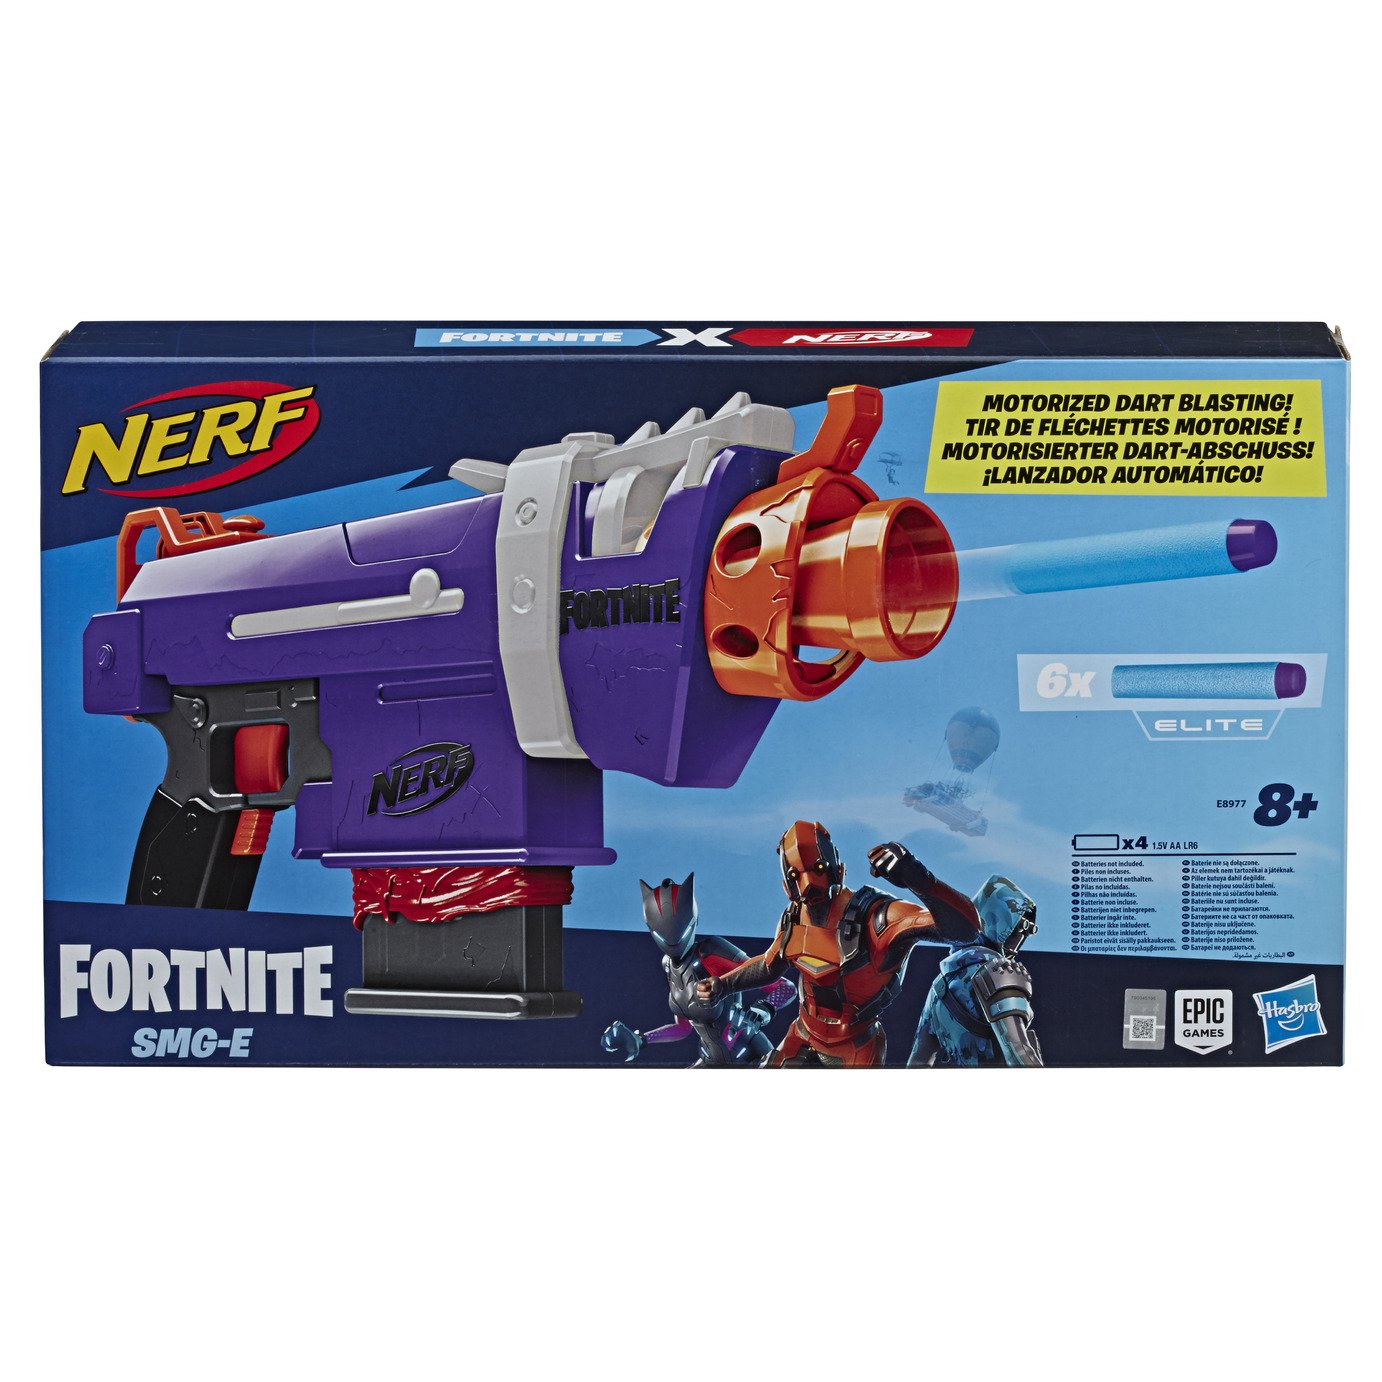 Nerf Fortnite SMG-E Blaster Review